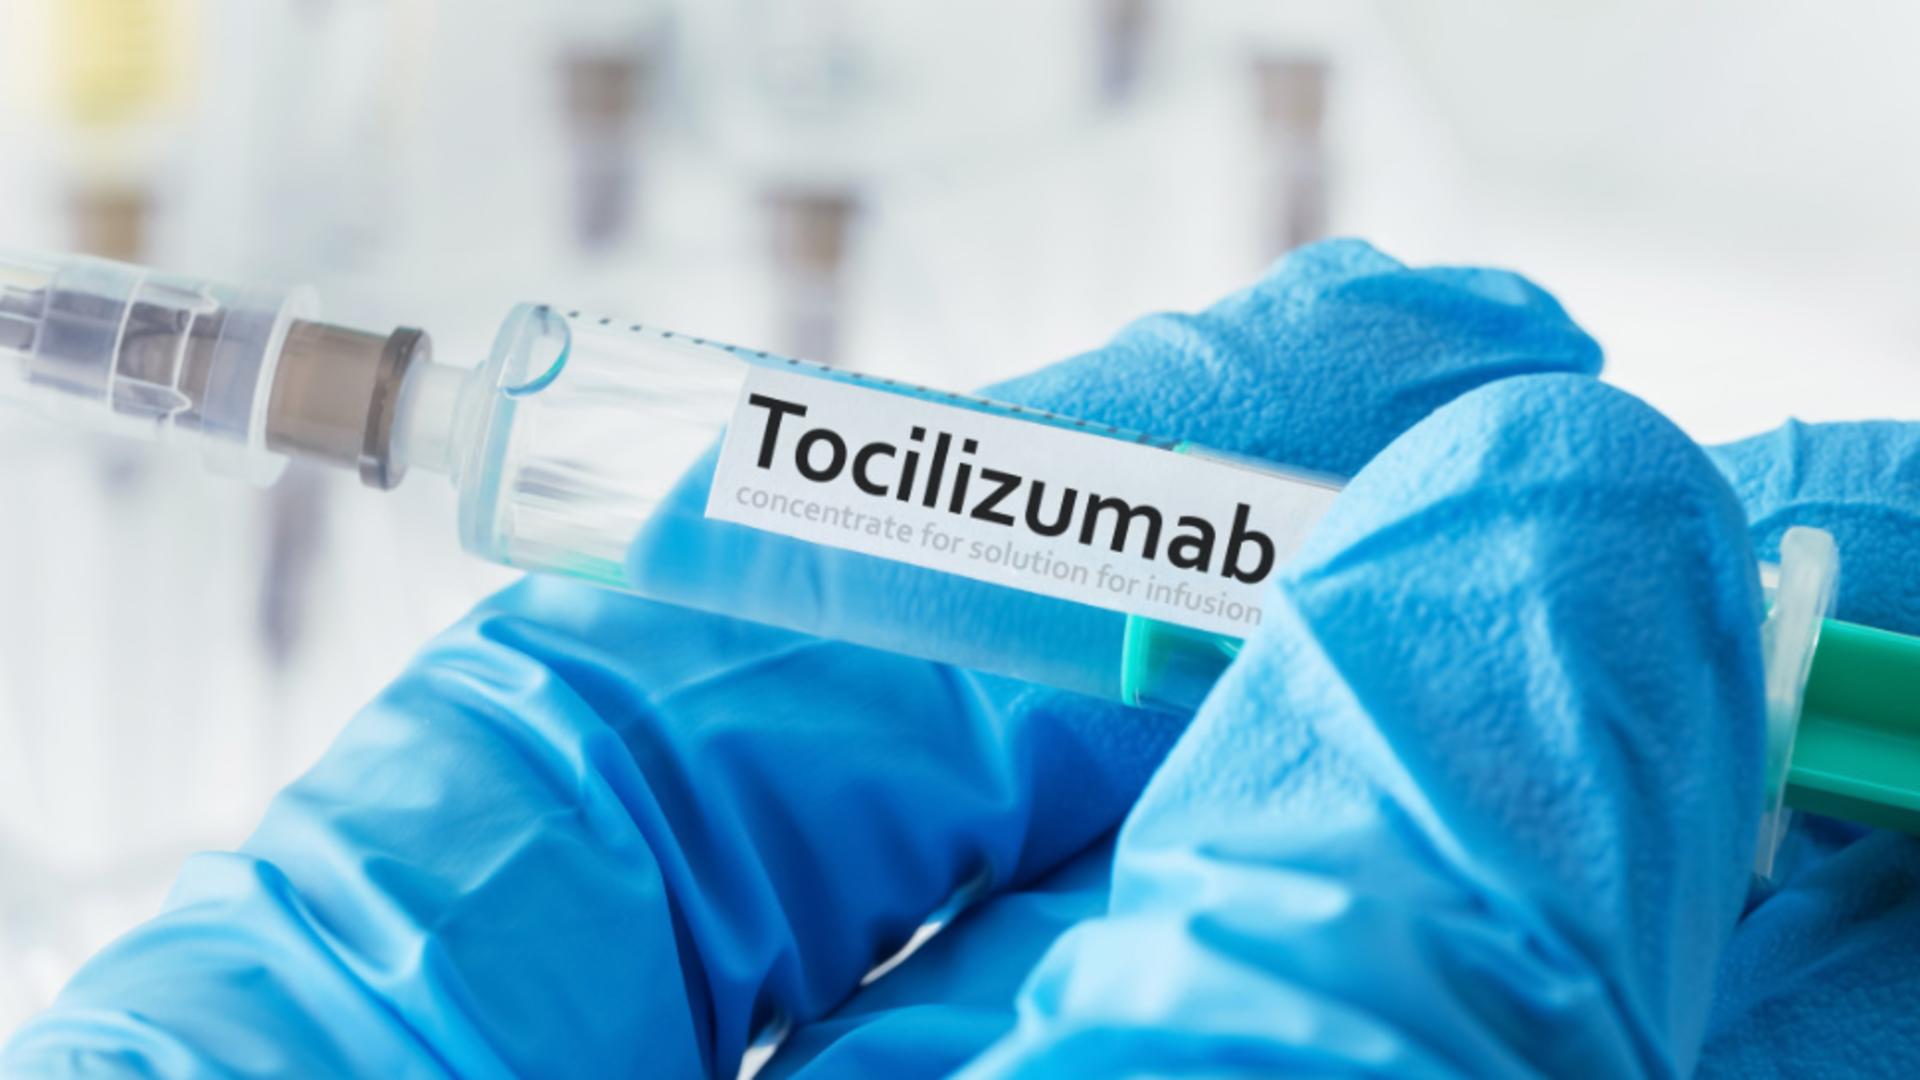 Puțin peste 4.000 de flacoane Tocilizumab au ajuns la DSP-uri. Foto/Profimedia